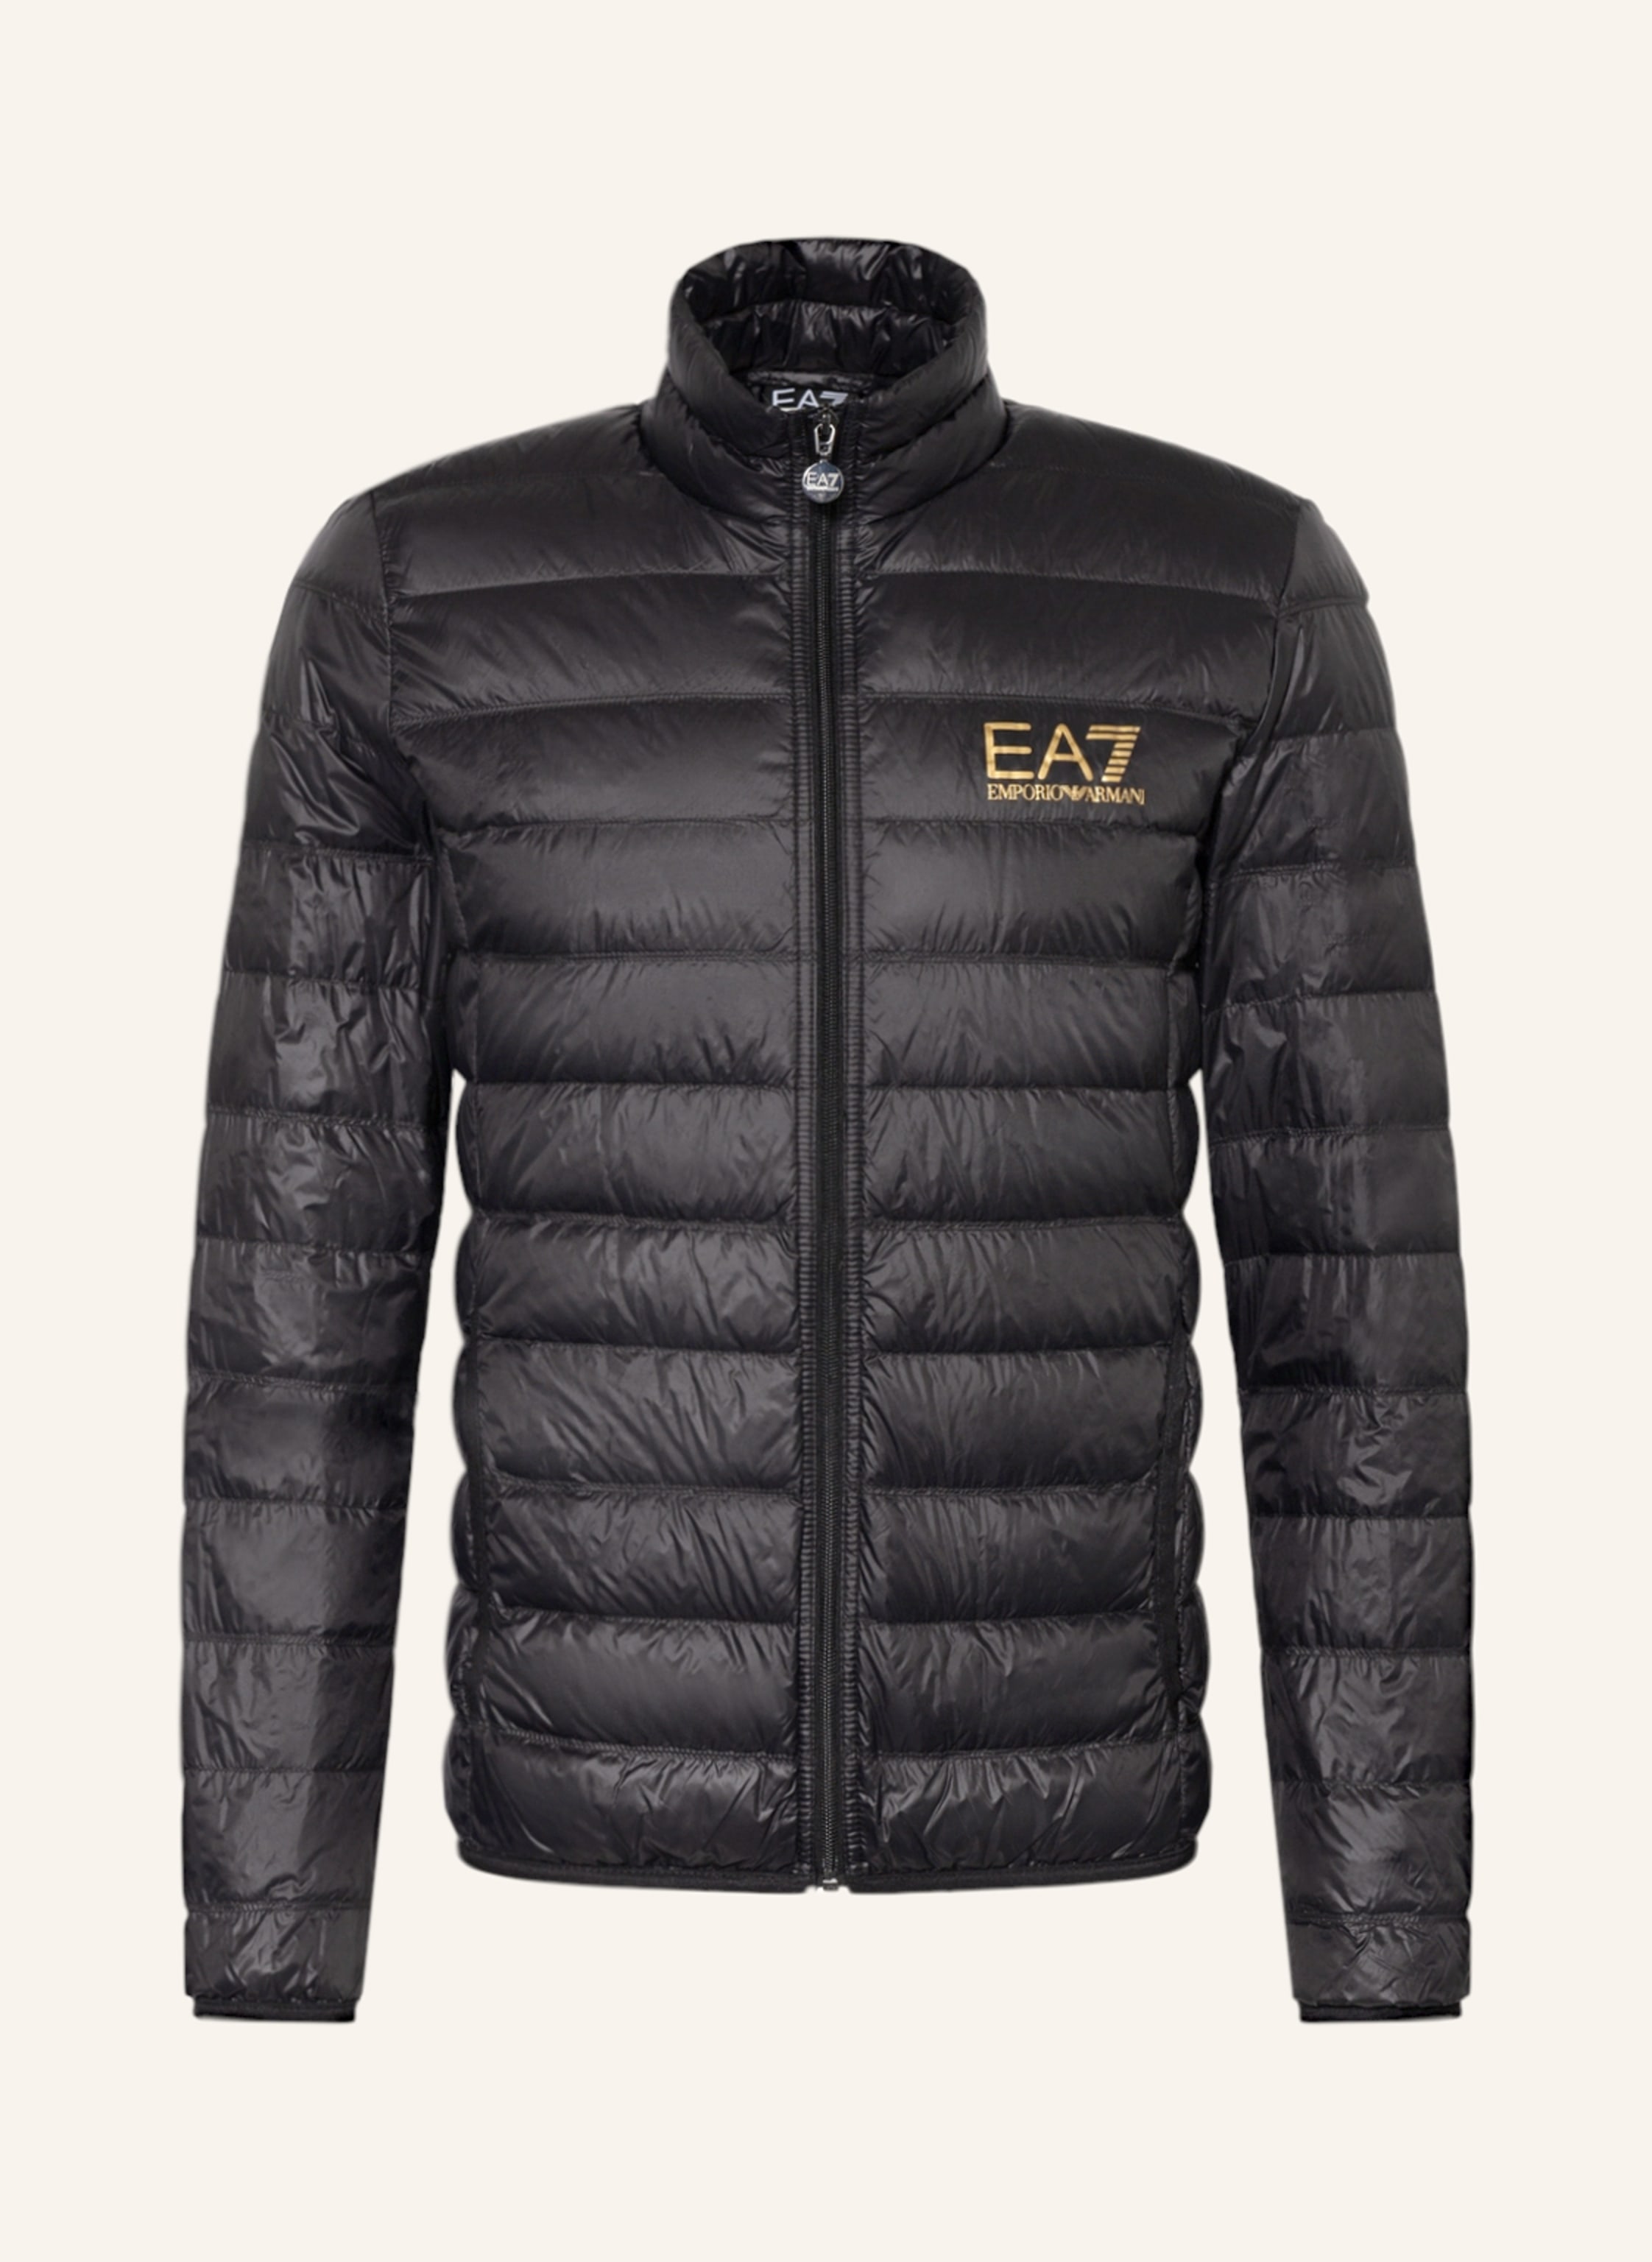 EA7 EMPORIO ARMANI Lightweight down jacket in black